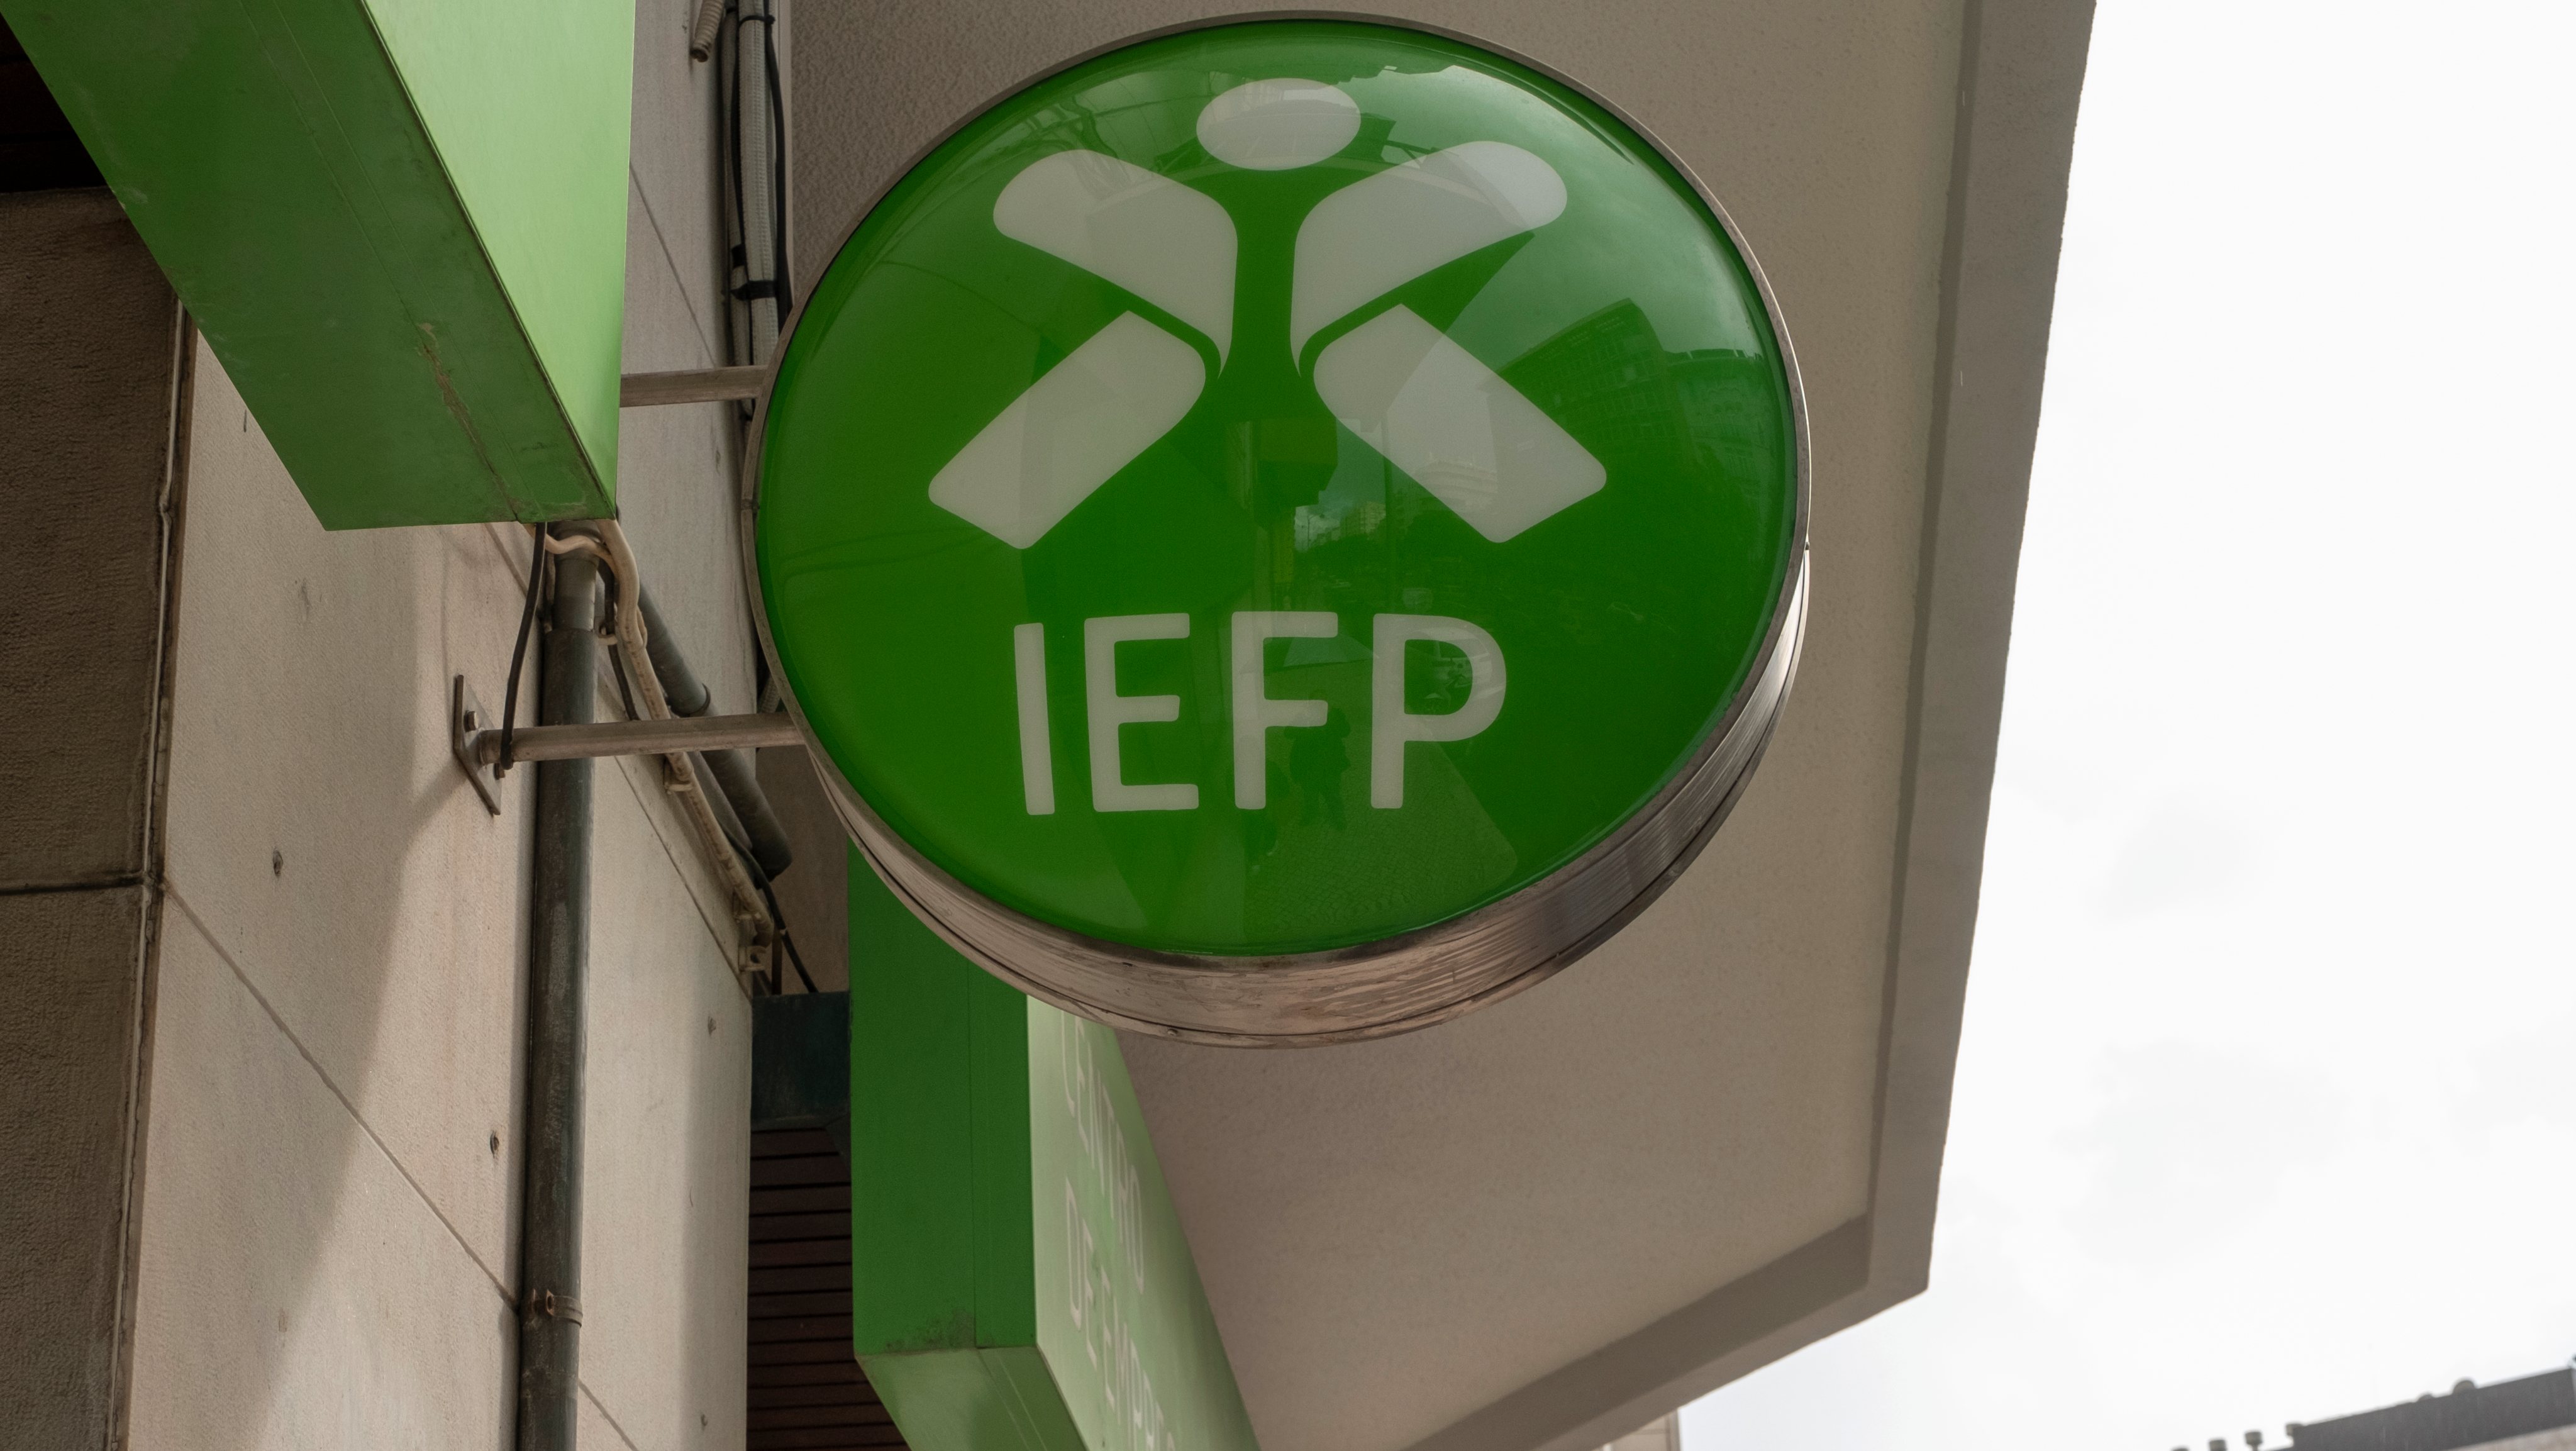 Governo cria Centros de Incubação e Inovação geridos pelo IEFP